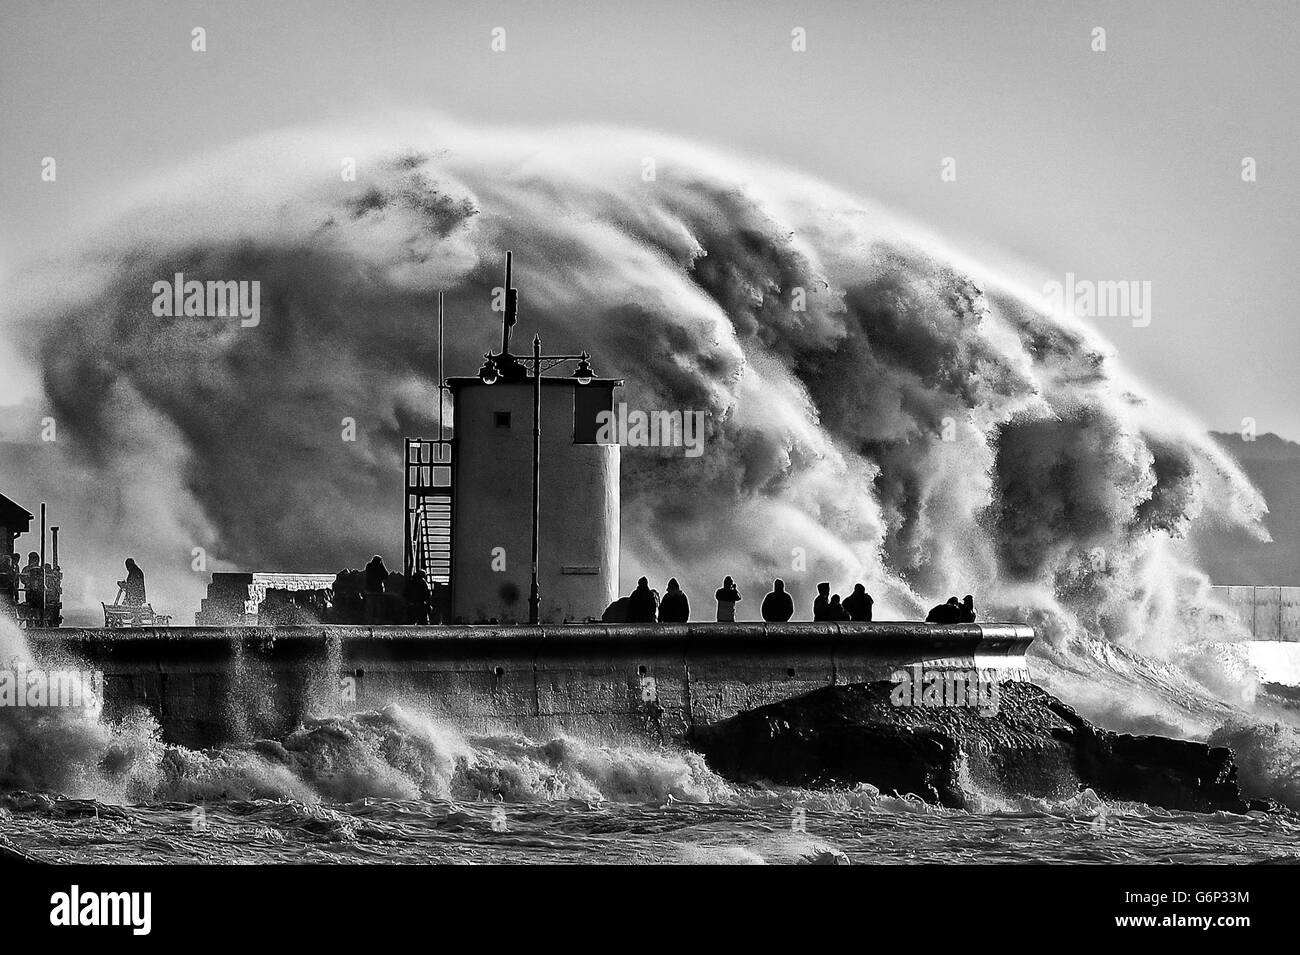 Am Hafen Porthcawl, Südwales, wo sehr starke Winde und hohe See gefährliche Wetterbedingungen erzeugen, beobachten und fotografieren die Menschen riesige Wellen. Stockfoto